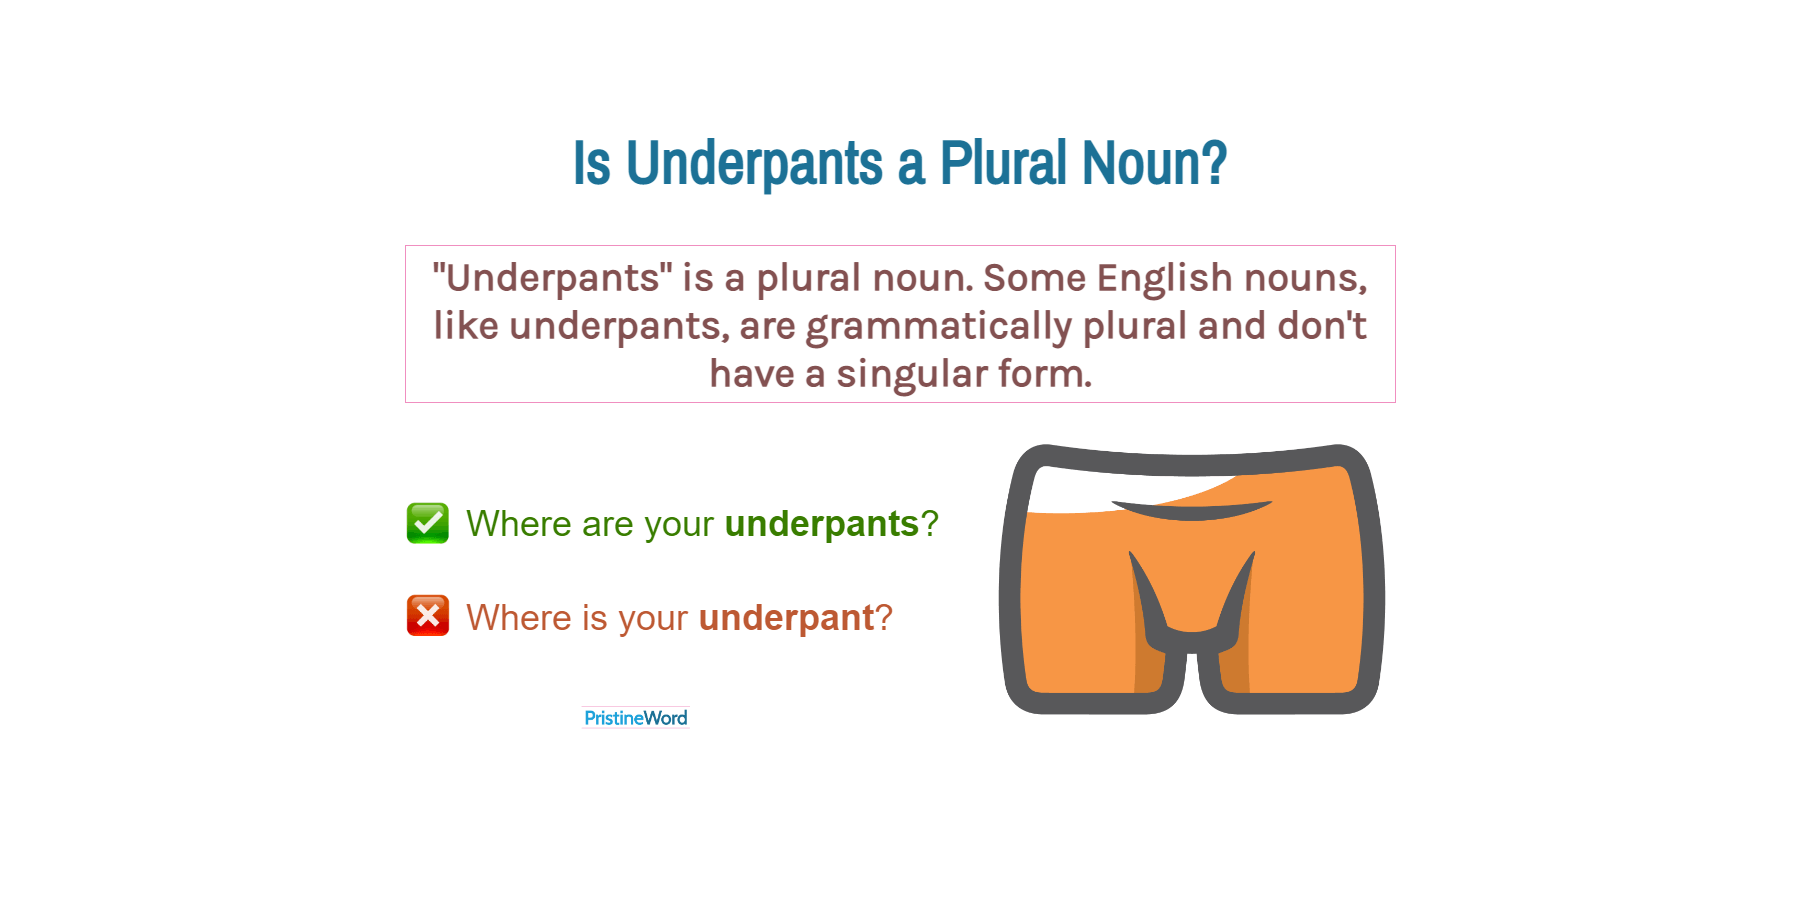 Is Underpants a Plural Noun?